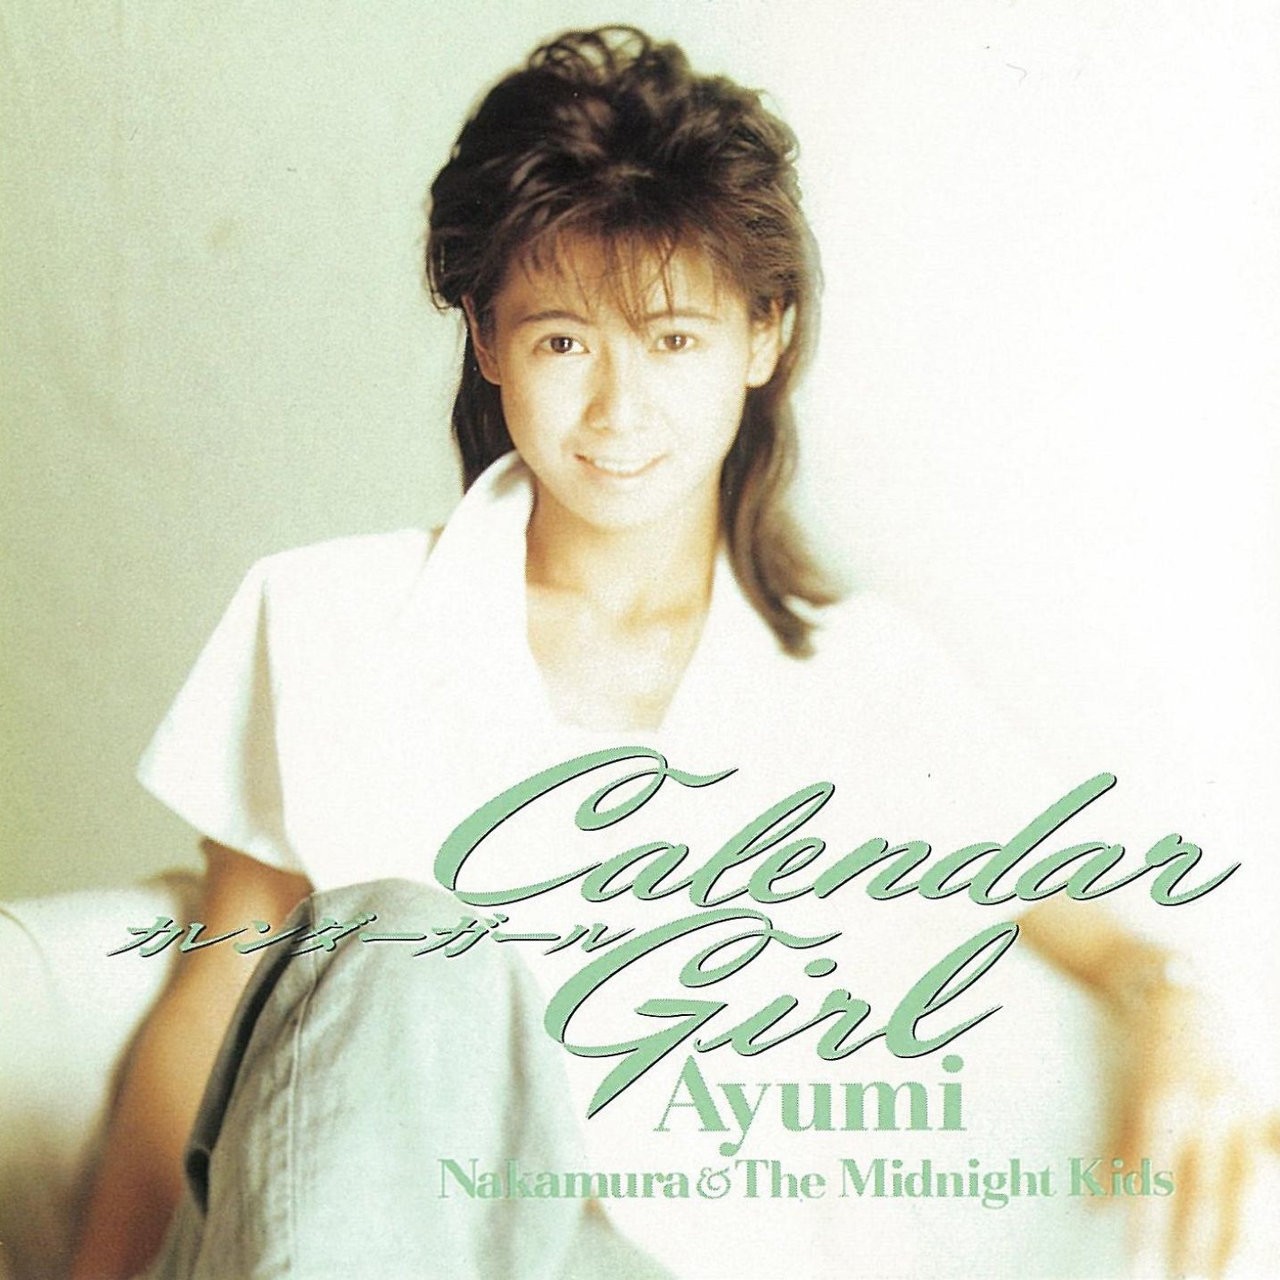 中村あゆみ (Ayumi Nakamura) - Calendar Girl (35周年記念 2019 Remaster) [FLAC 24bit/48kHz]